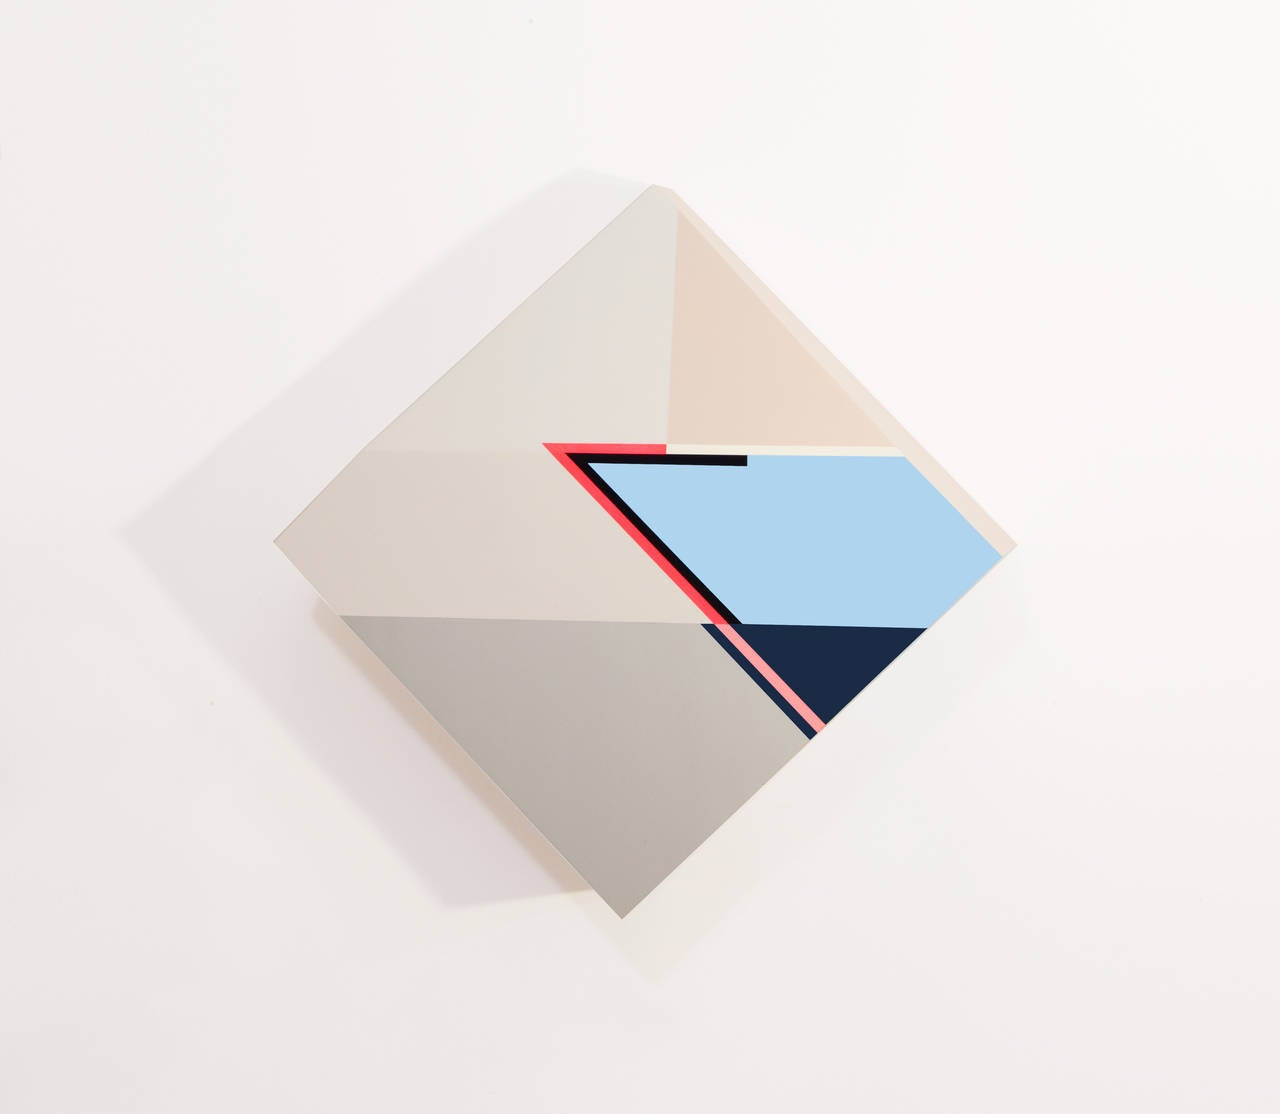 Zin Helena Song Abstract Sculpture – Origami #20 - Quadratisches geometrisches skulpturales Gemälde auf Holz in Blau, Creme und Rot